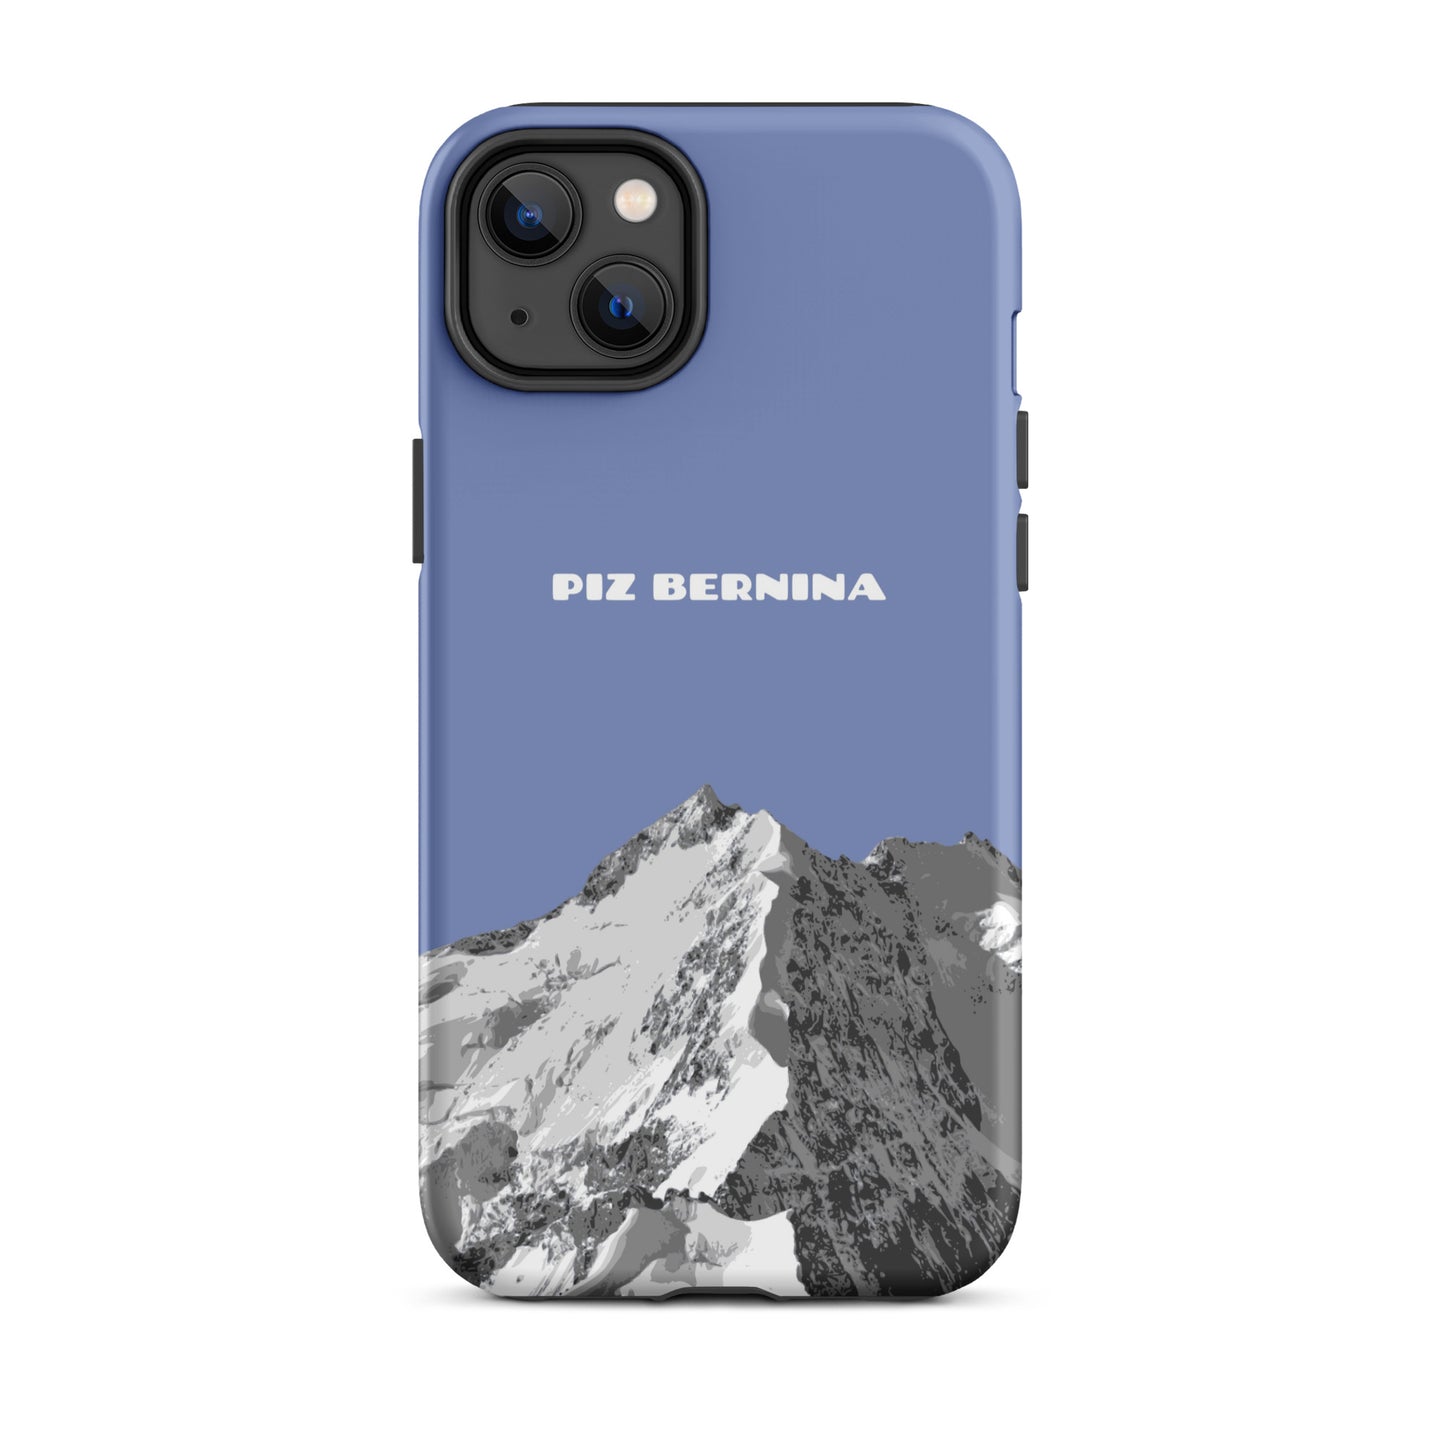 Hülle für das iPhone 14 Plus von Apple in der Farbe Pastellblau, dass den Piz Bernina in Graubünden zeigt.